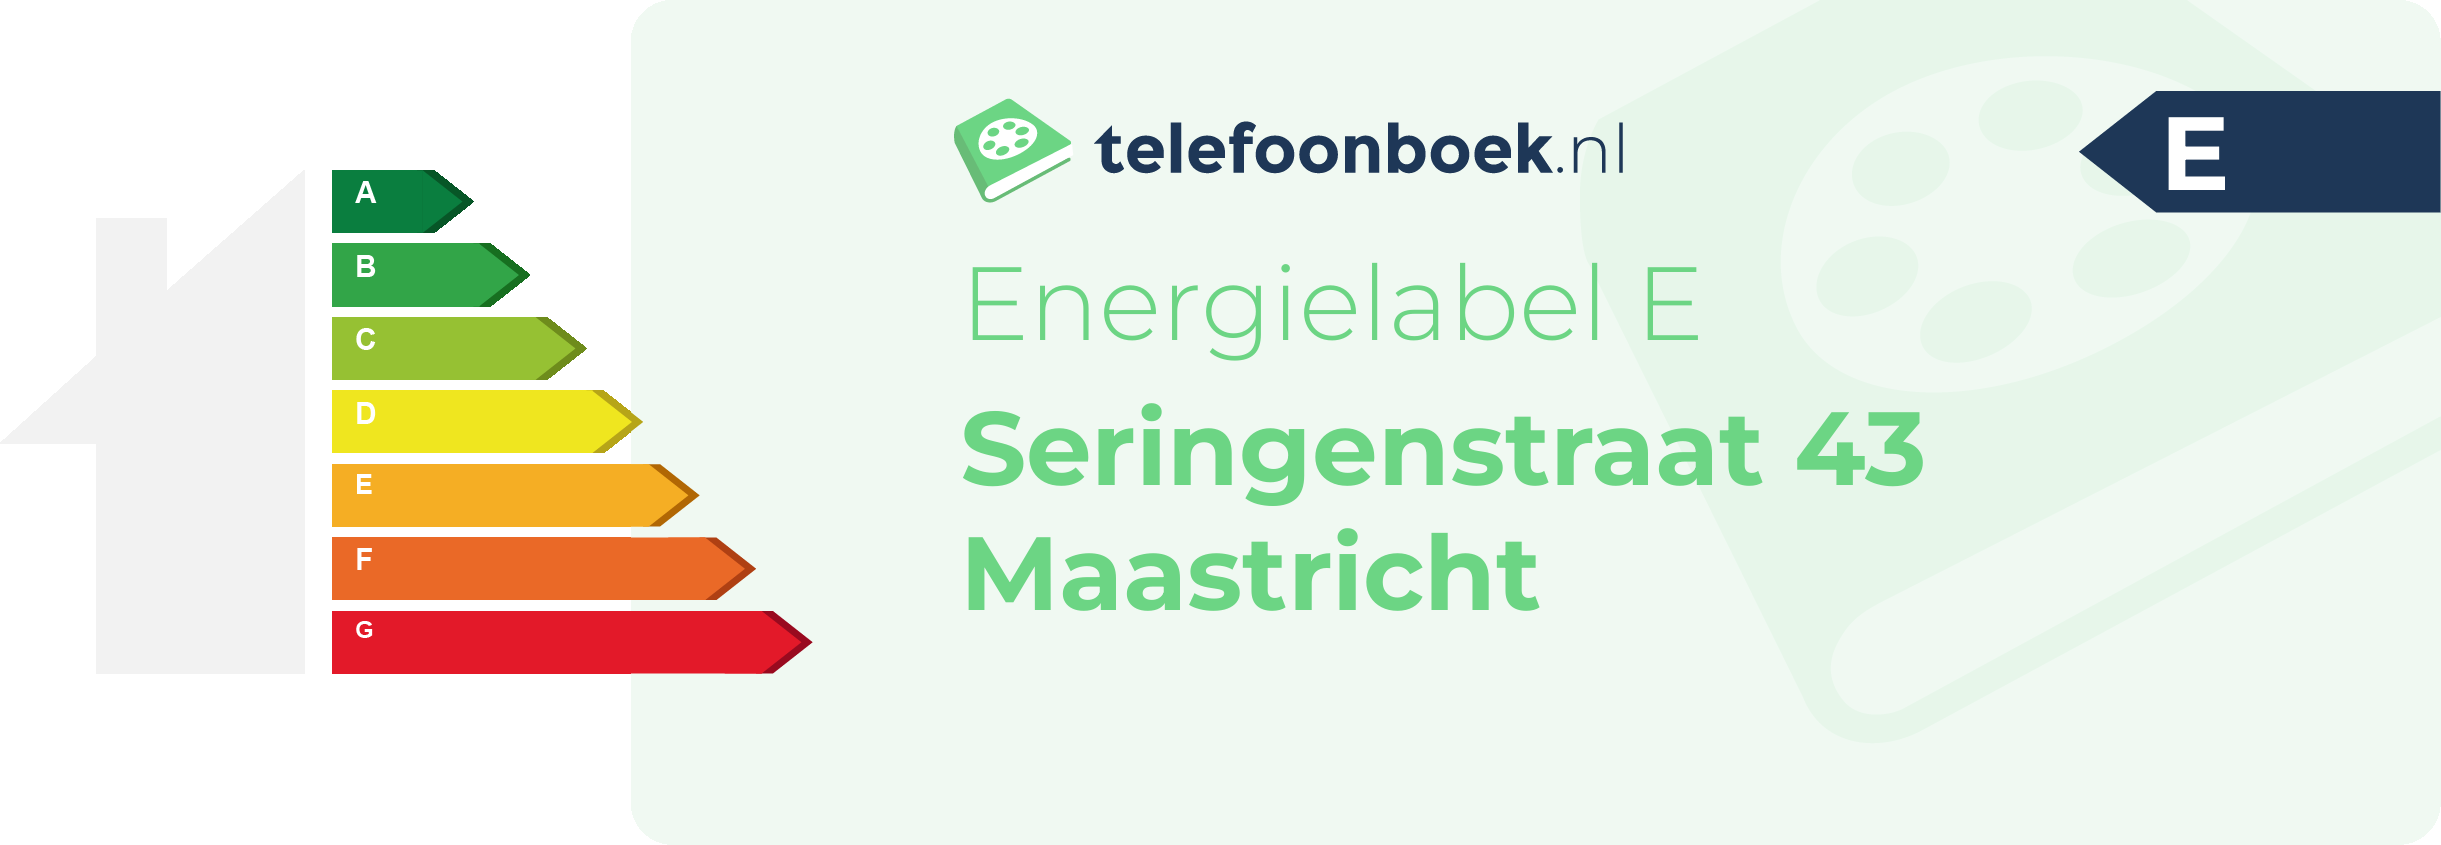 Energielabel Seringenstraat 43 Maastricht